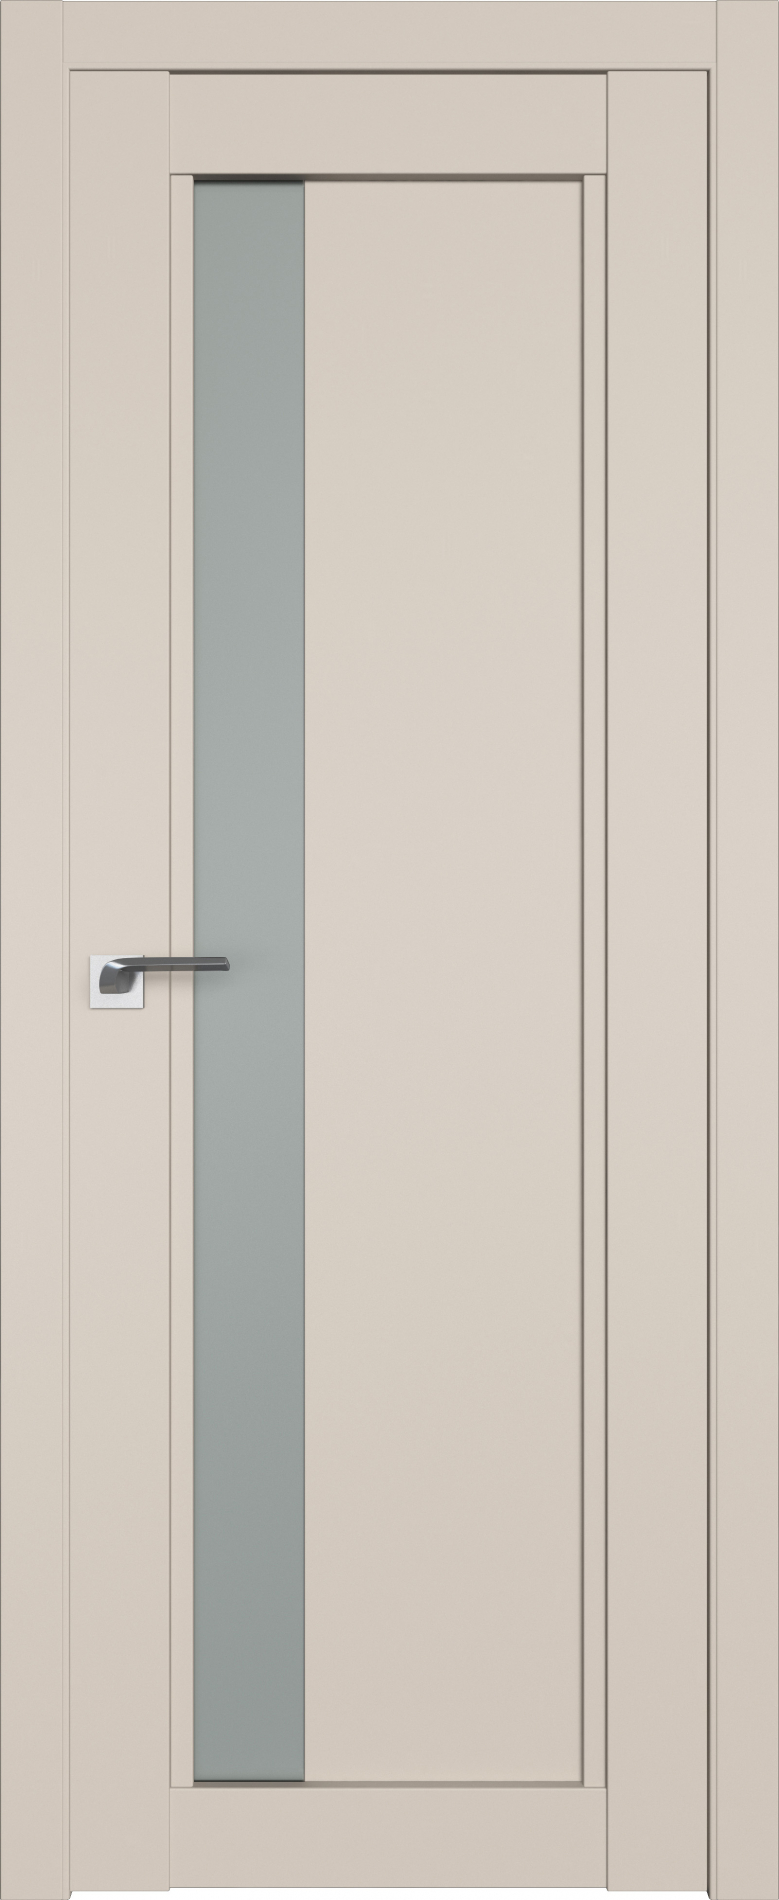 межкомнатные двери  Profil Doors 2.71U санд